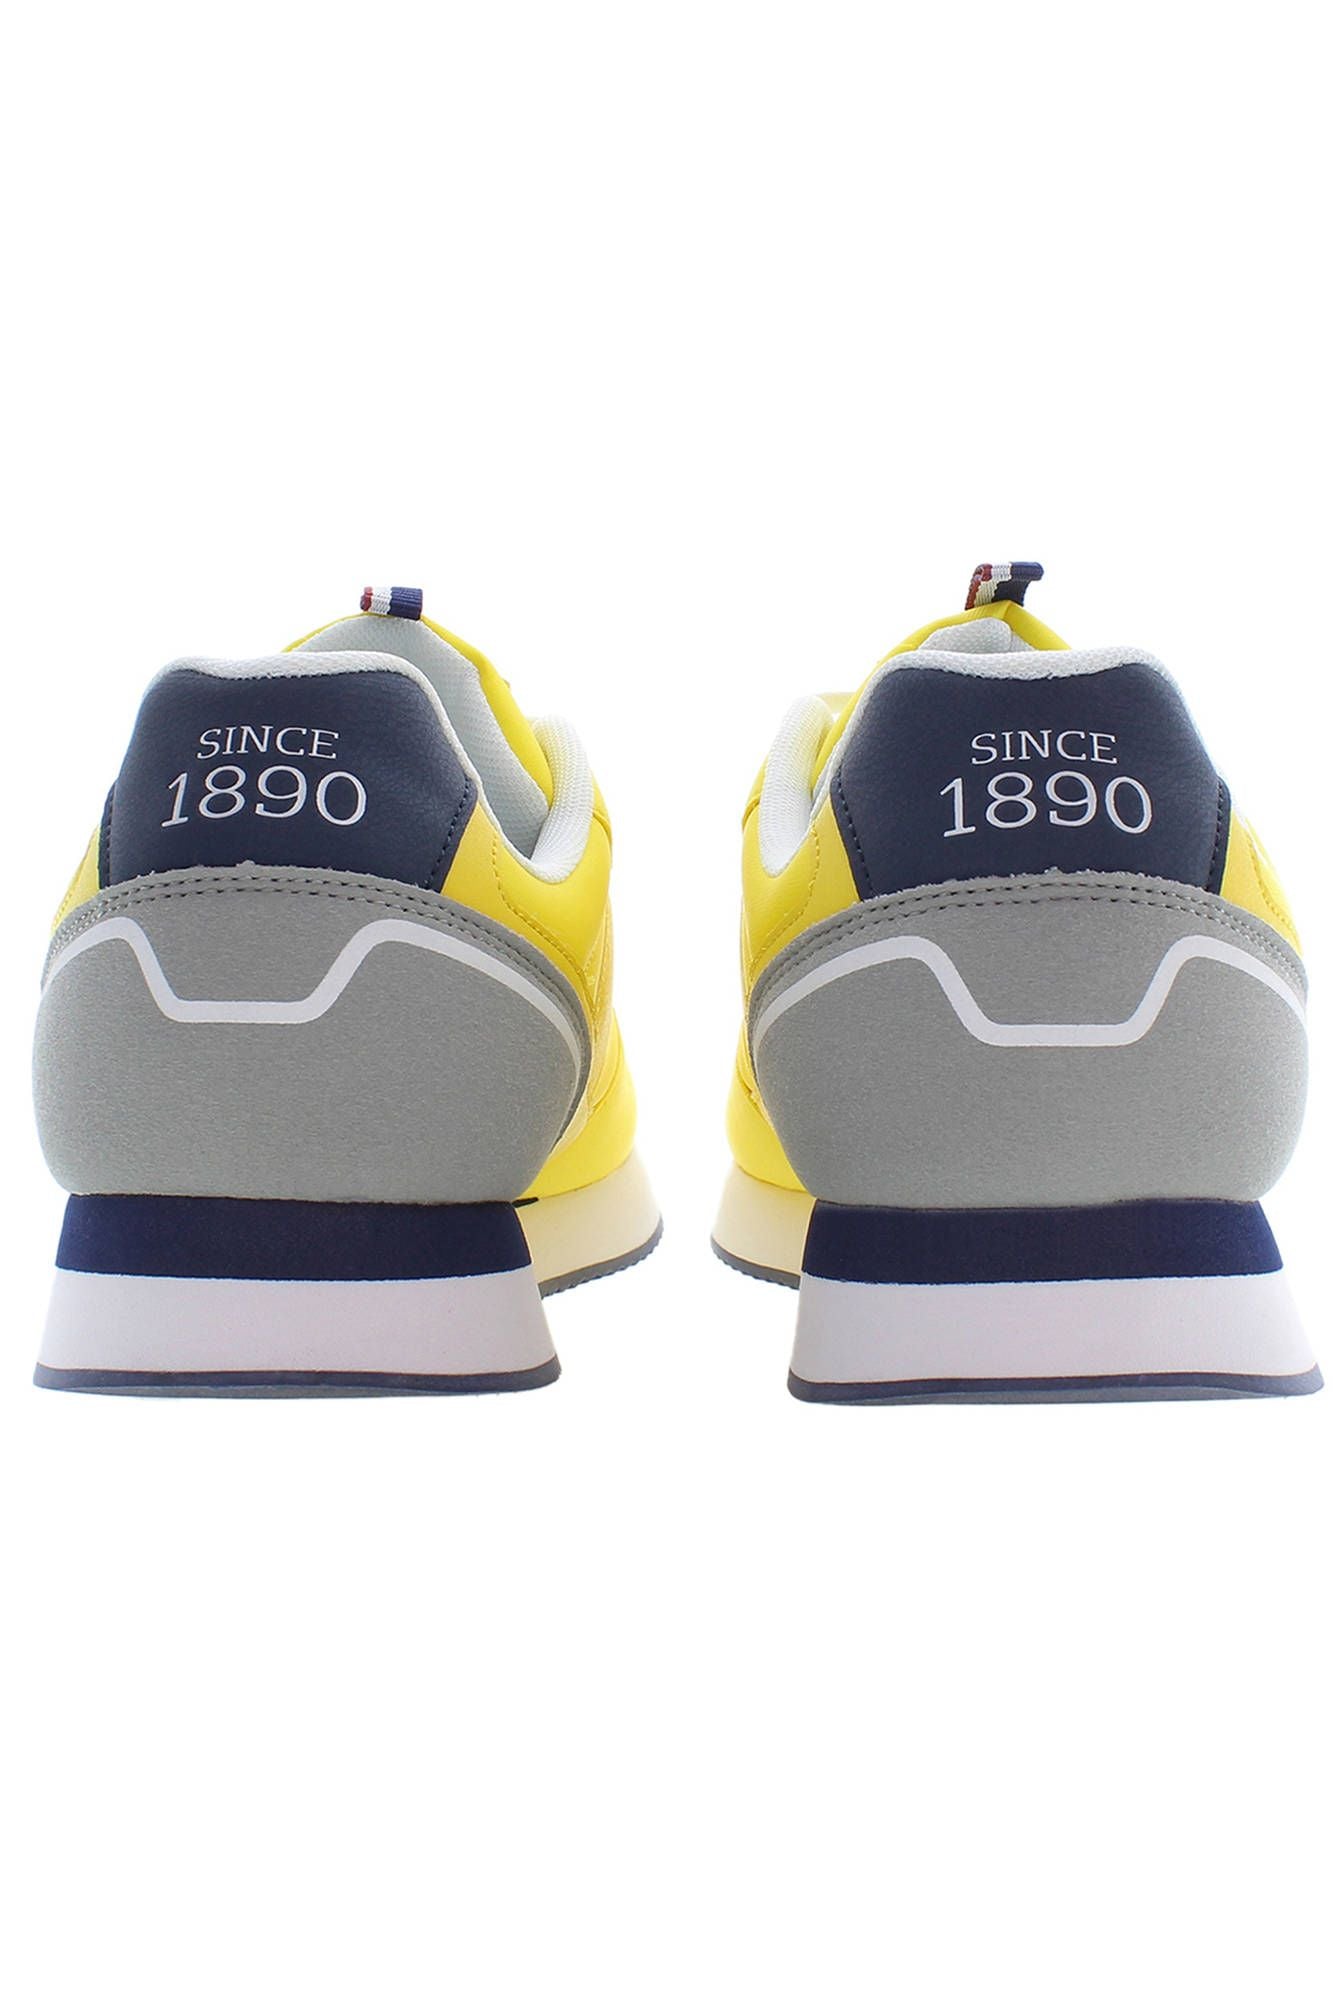 U.S. Polo Assn. Yellow Polyester Sneaker